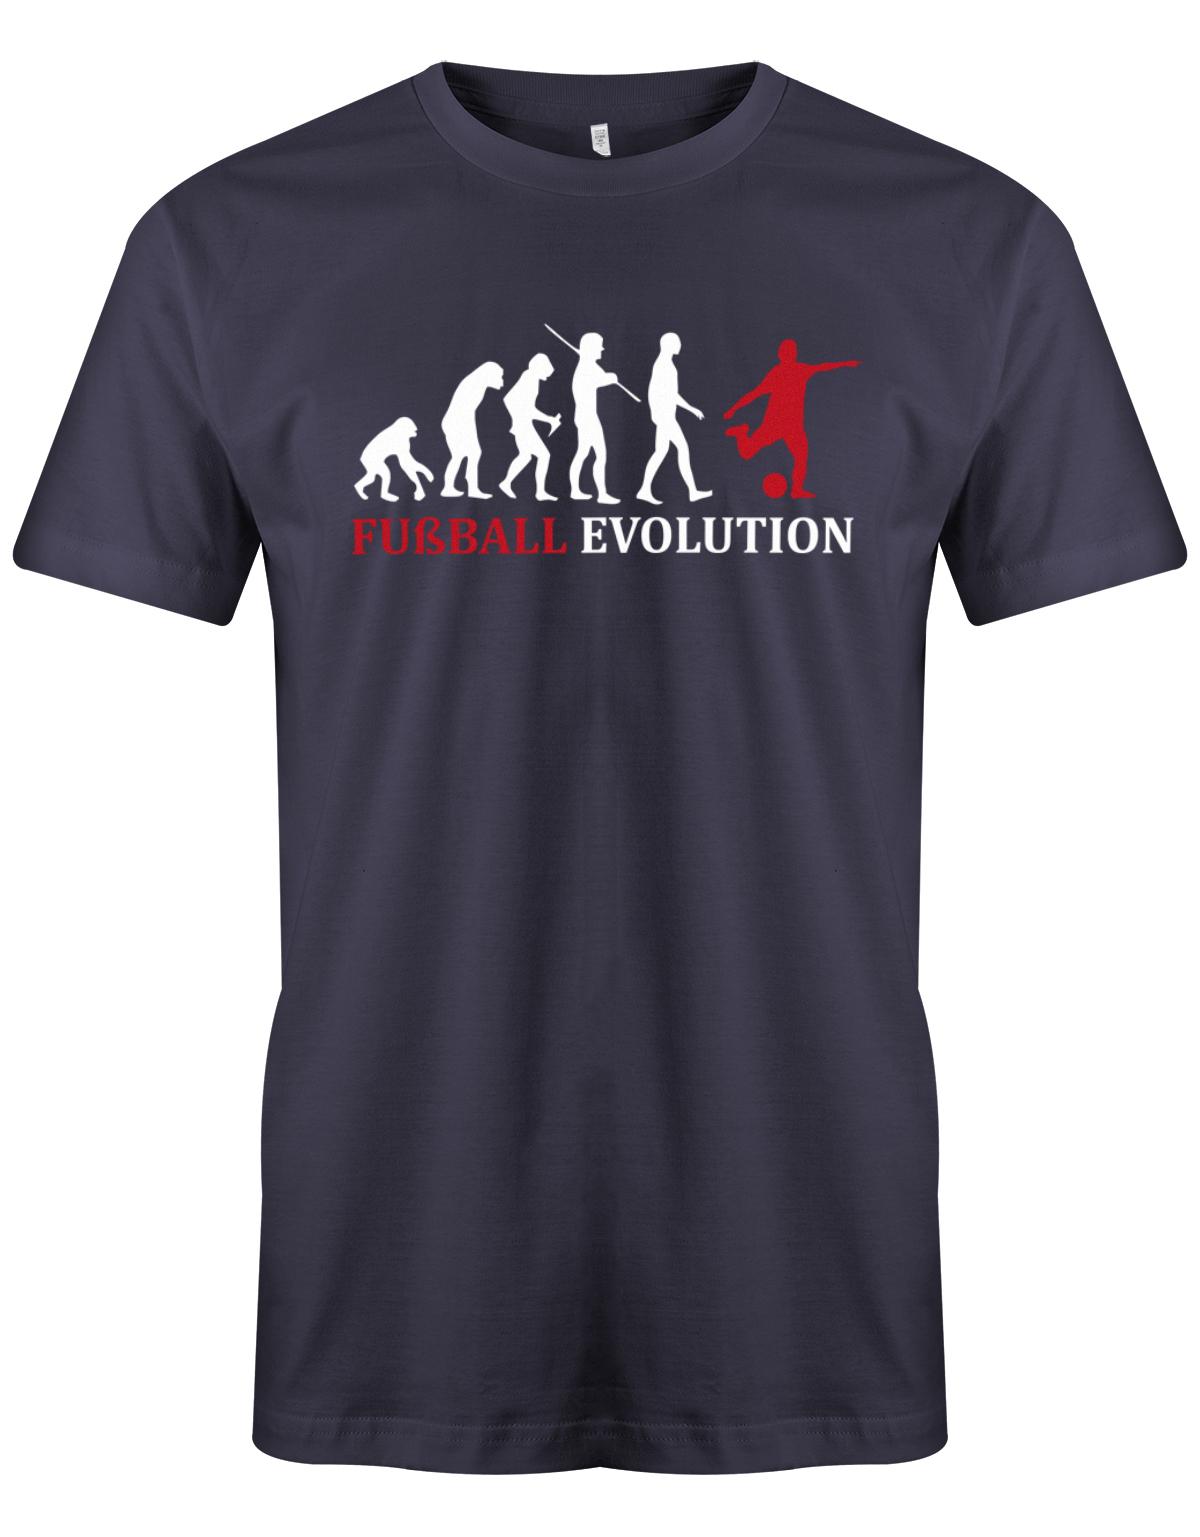 Fussball-Evolution-Herren-Shirt-Navy-Rot